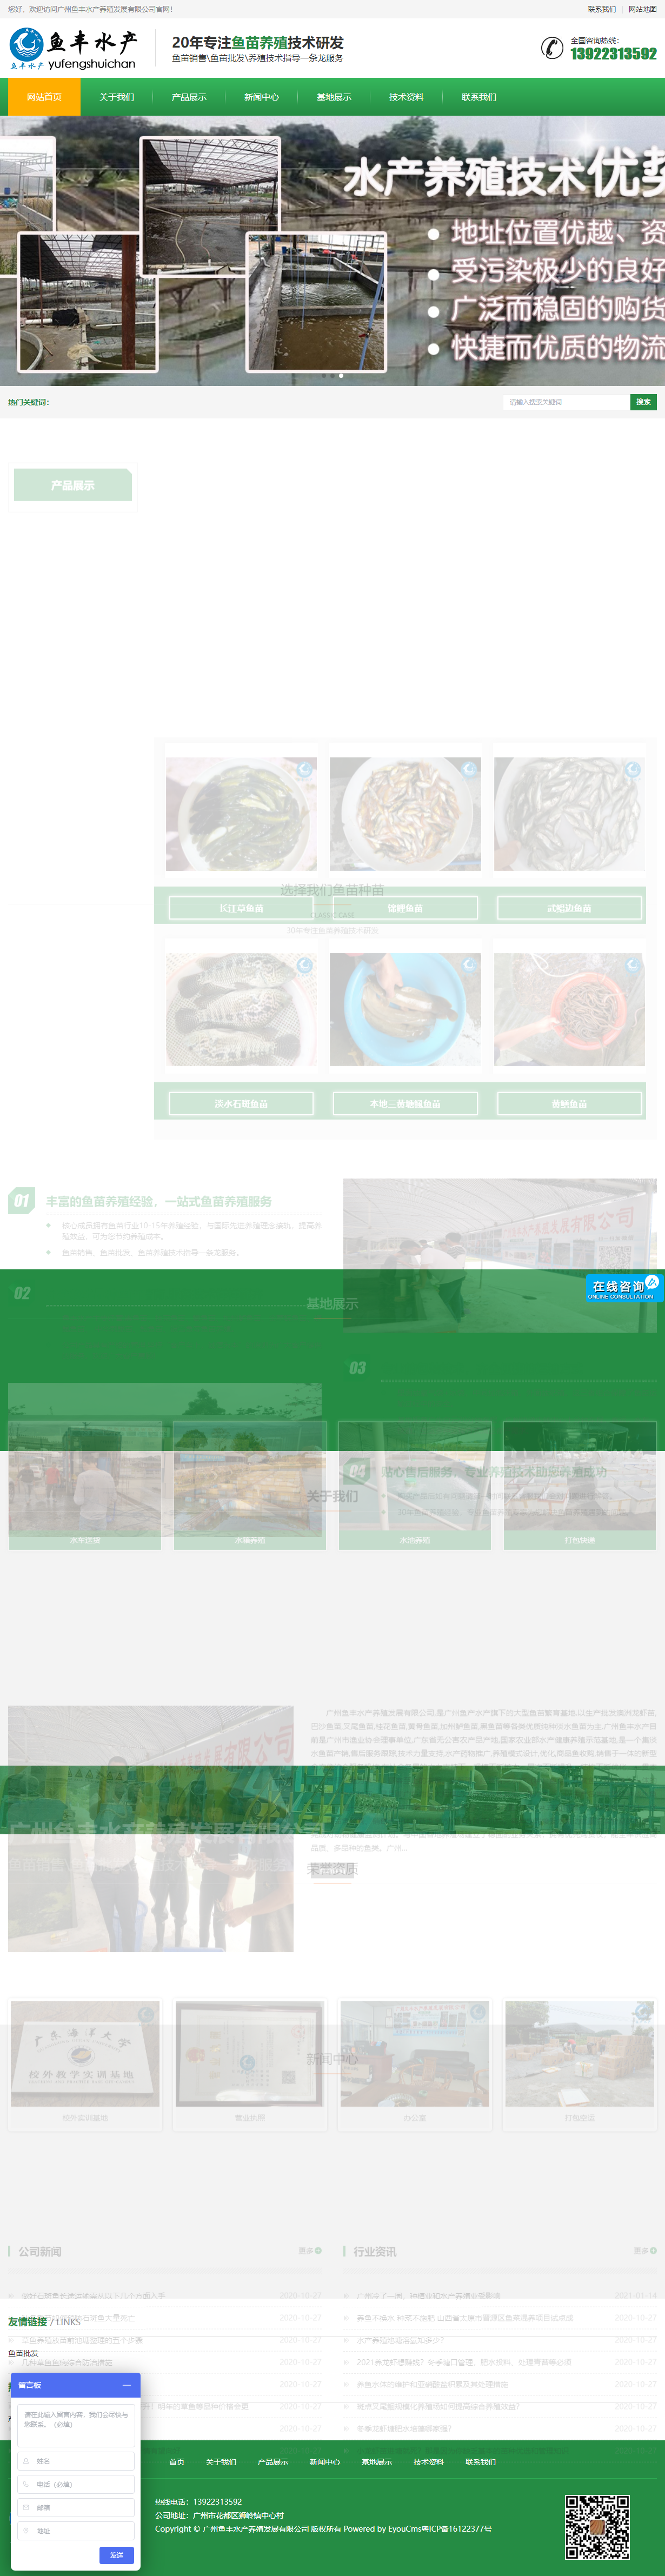 广州鱼丰水产养殖发展有限公司网站案例